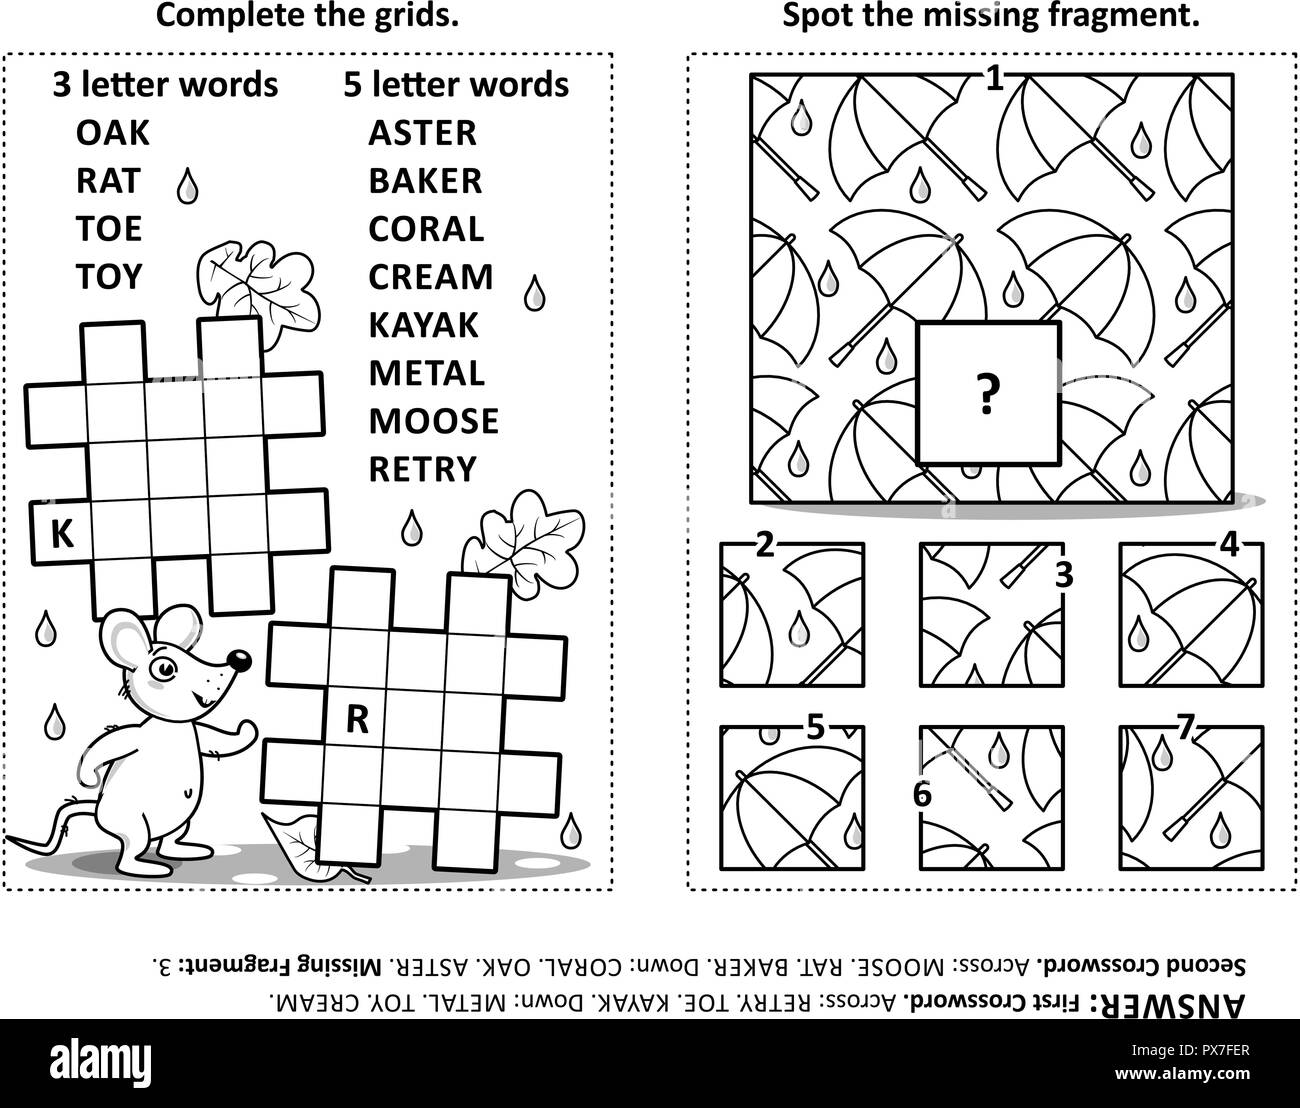 Aktivität Seite mit zwei Rätsel. Fill-in-Kreuzworträtsel oder Wort Spiel. Stelle Das fehlende Fragment des Pattern. Schwarz und Weiß. Antworten enthalten. Stock Vektor